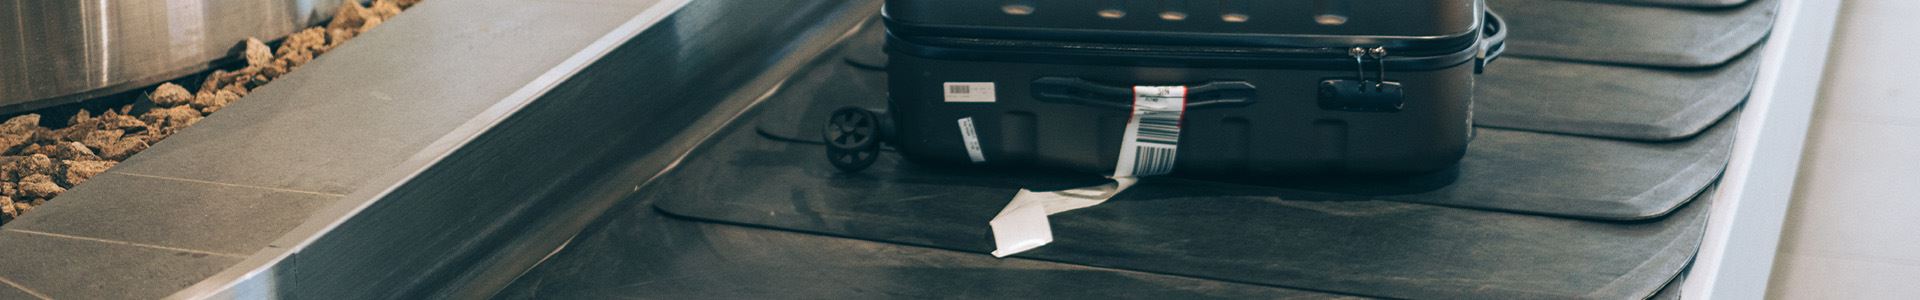 Bild bestehend aus einem schwarzen Hartschalenkoffer mit Rädern, oberen und seitlichen Griffen und einem weißen Gepäckanhänger am seitlichen Griff, der auf einer Gepäckausgabematte eines Flughafens liegt.